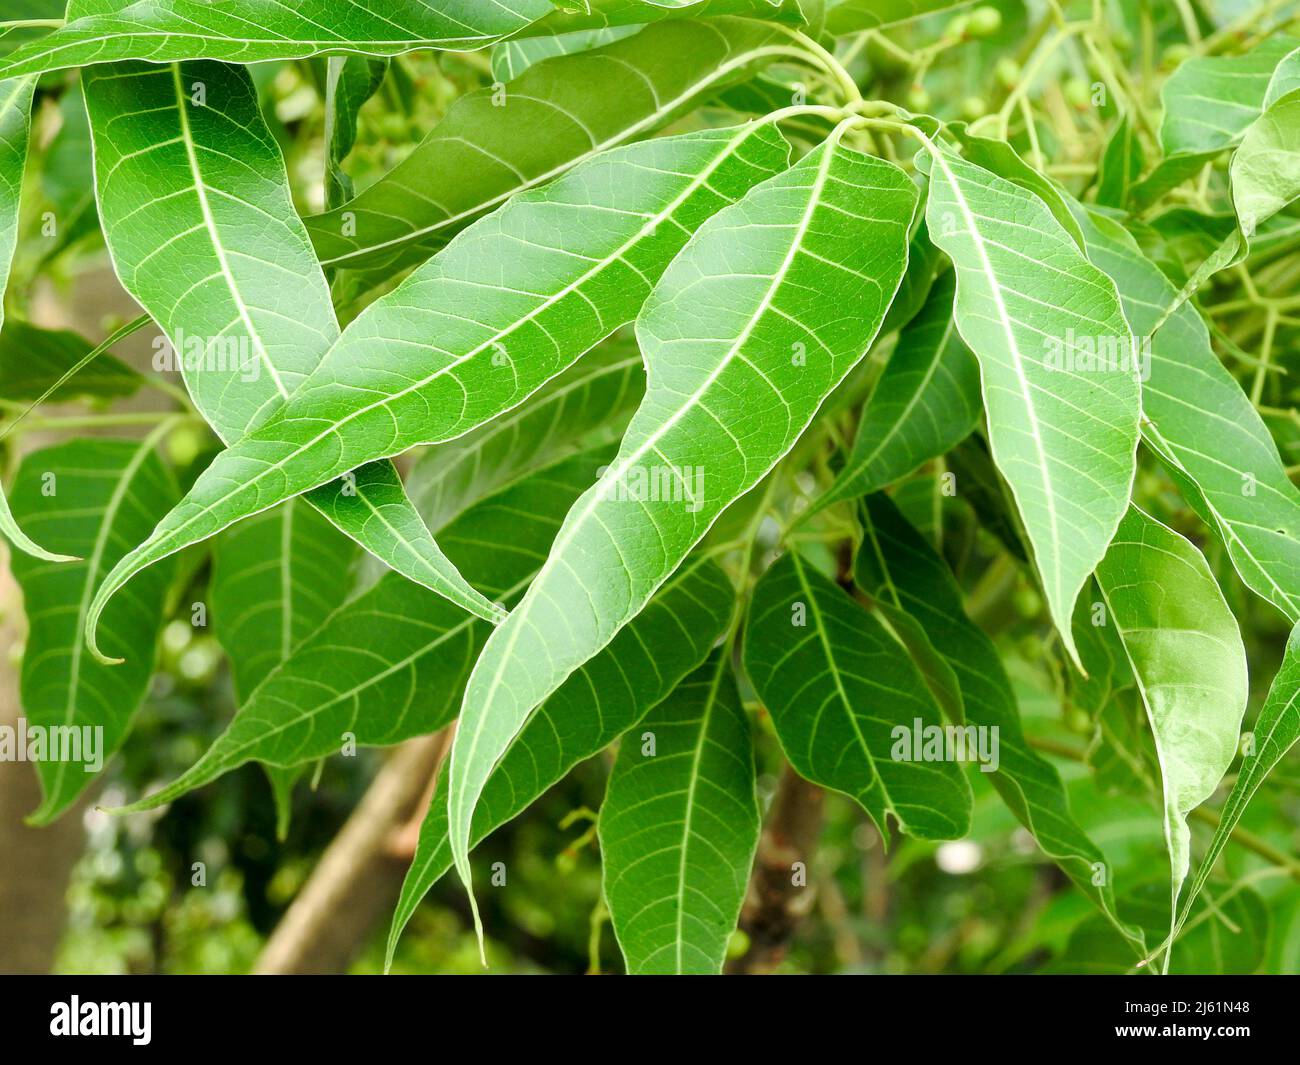 Foglie di lilla indiane. Azadirachta indica, comunemente noto come neem, nimtree o lilla indiana, è un albero della famiglia mogano Meliaceae. Foto Stock